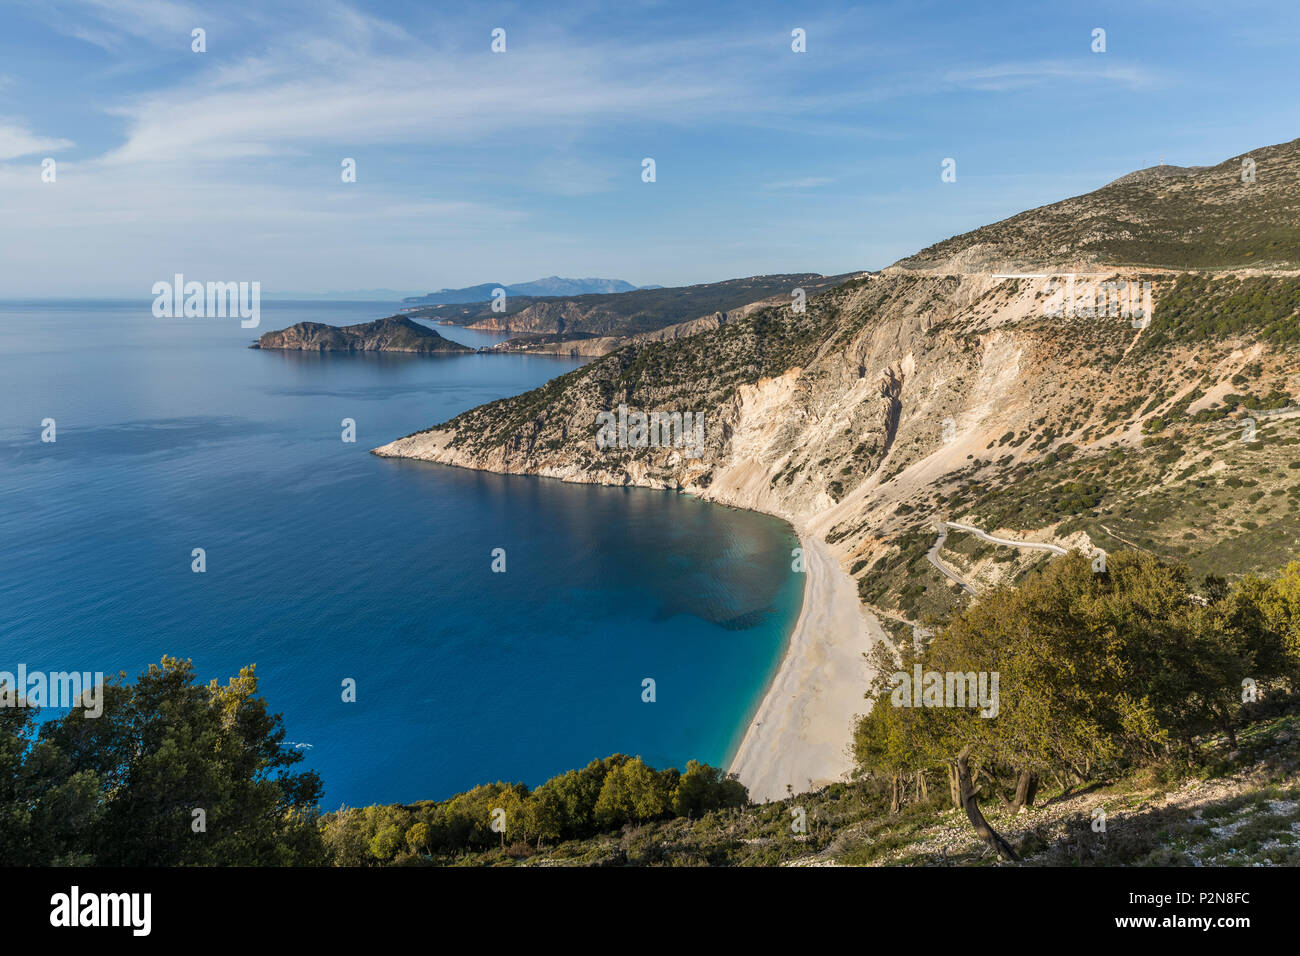 Vue aérienne de la Plage de Myrtos, l'une des plus spectaculaires plages de Grèce Banque D'Images